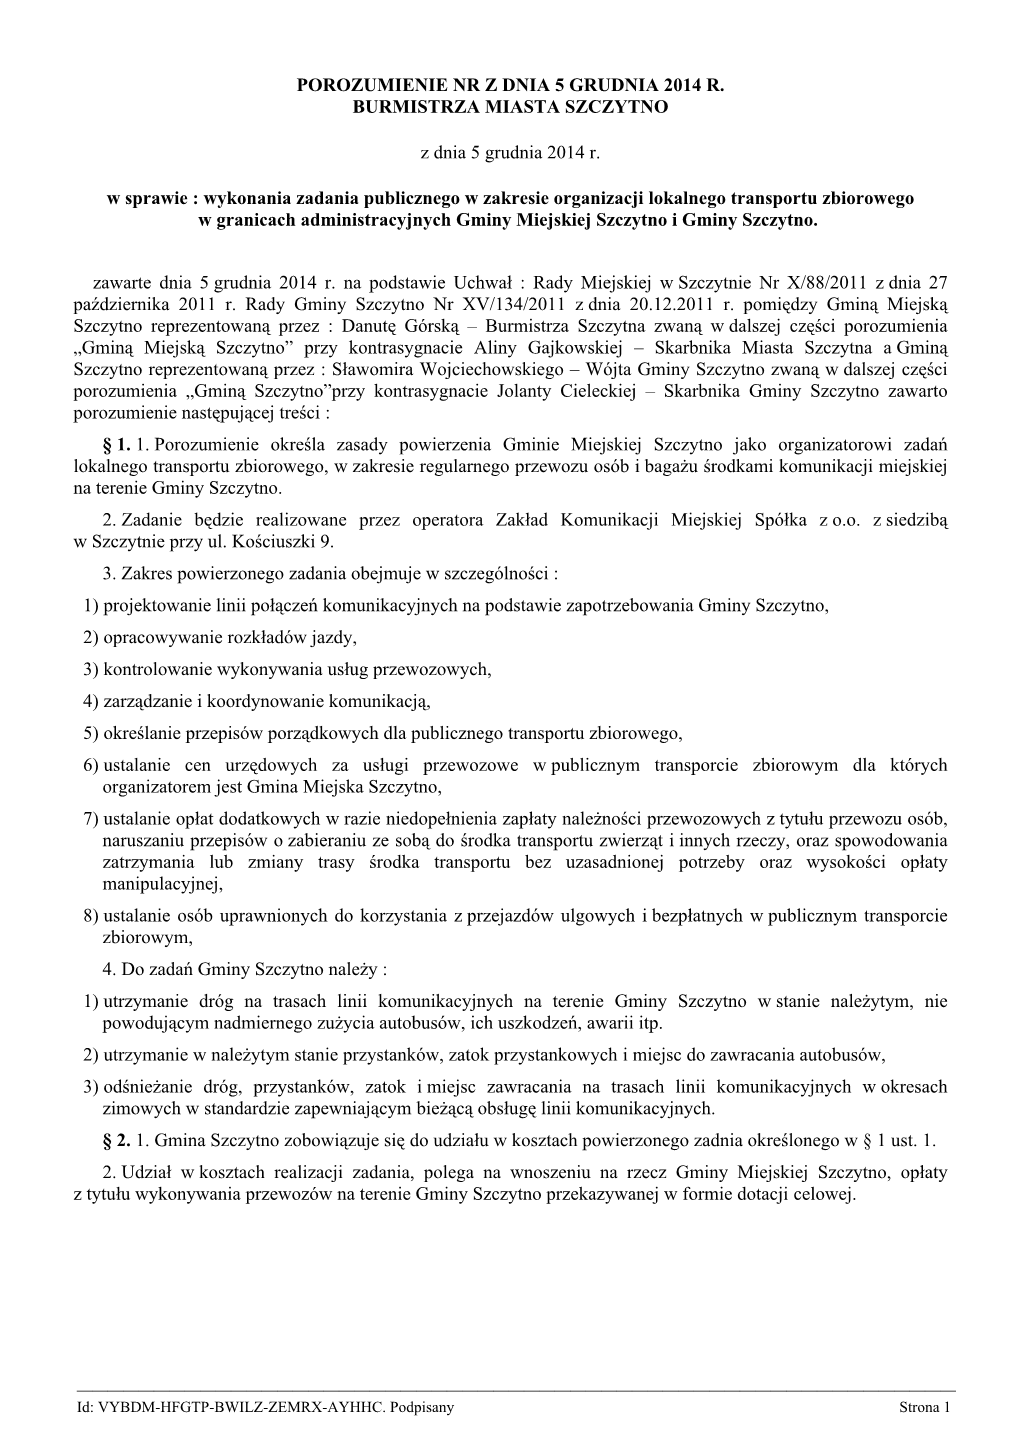 Porozumienie Nr Z Dnia 5 Grudnia 2014 R. Burmistrza Miasta Szczytno